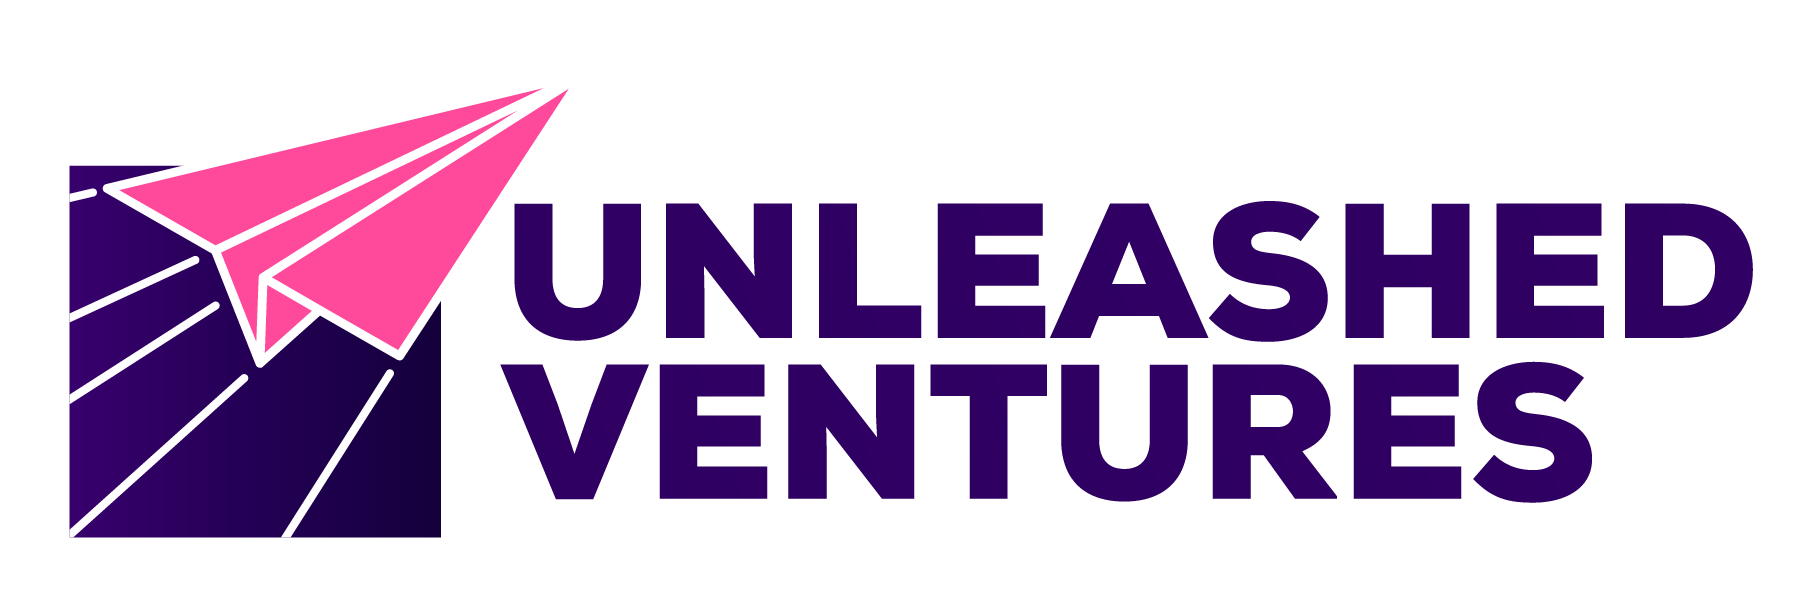 Unleashed Ventures Logo